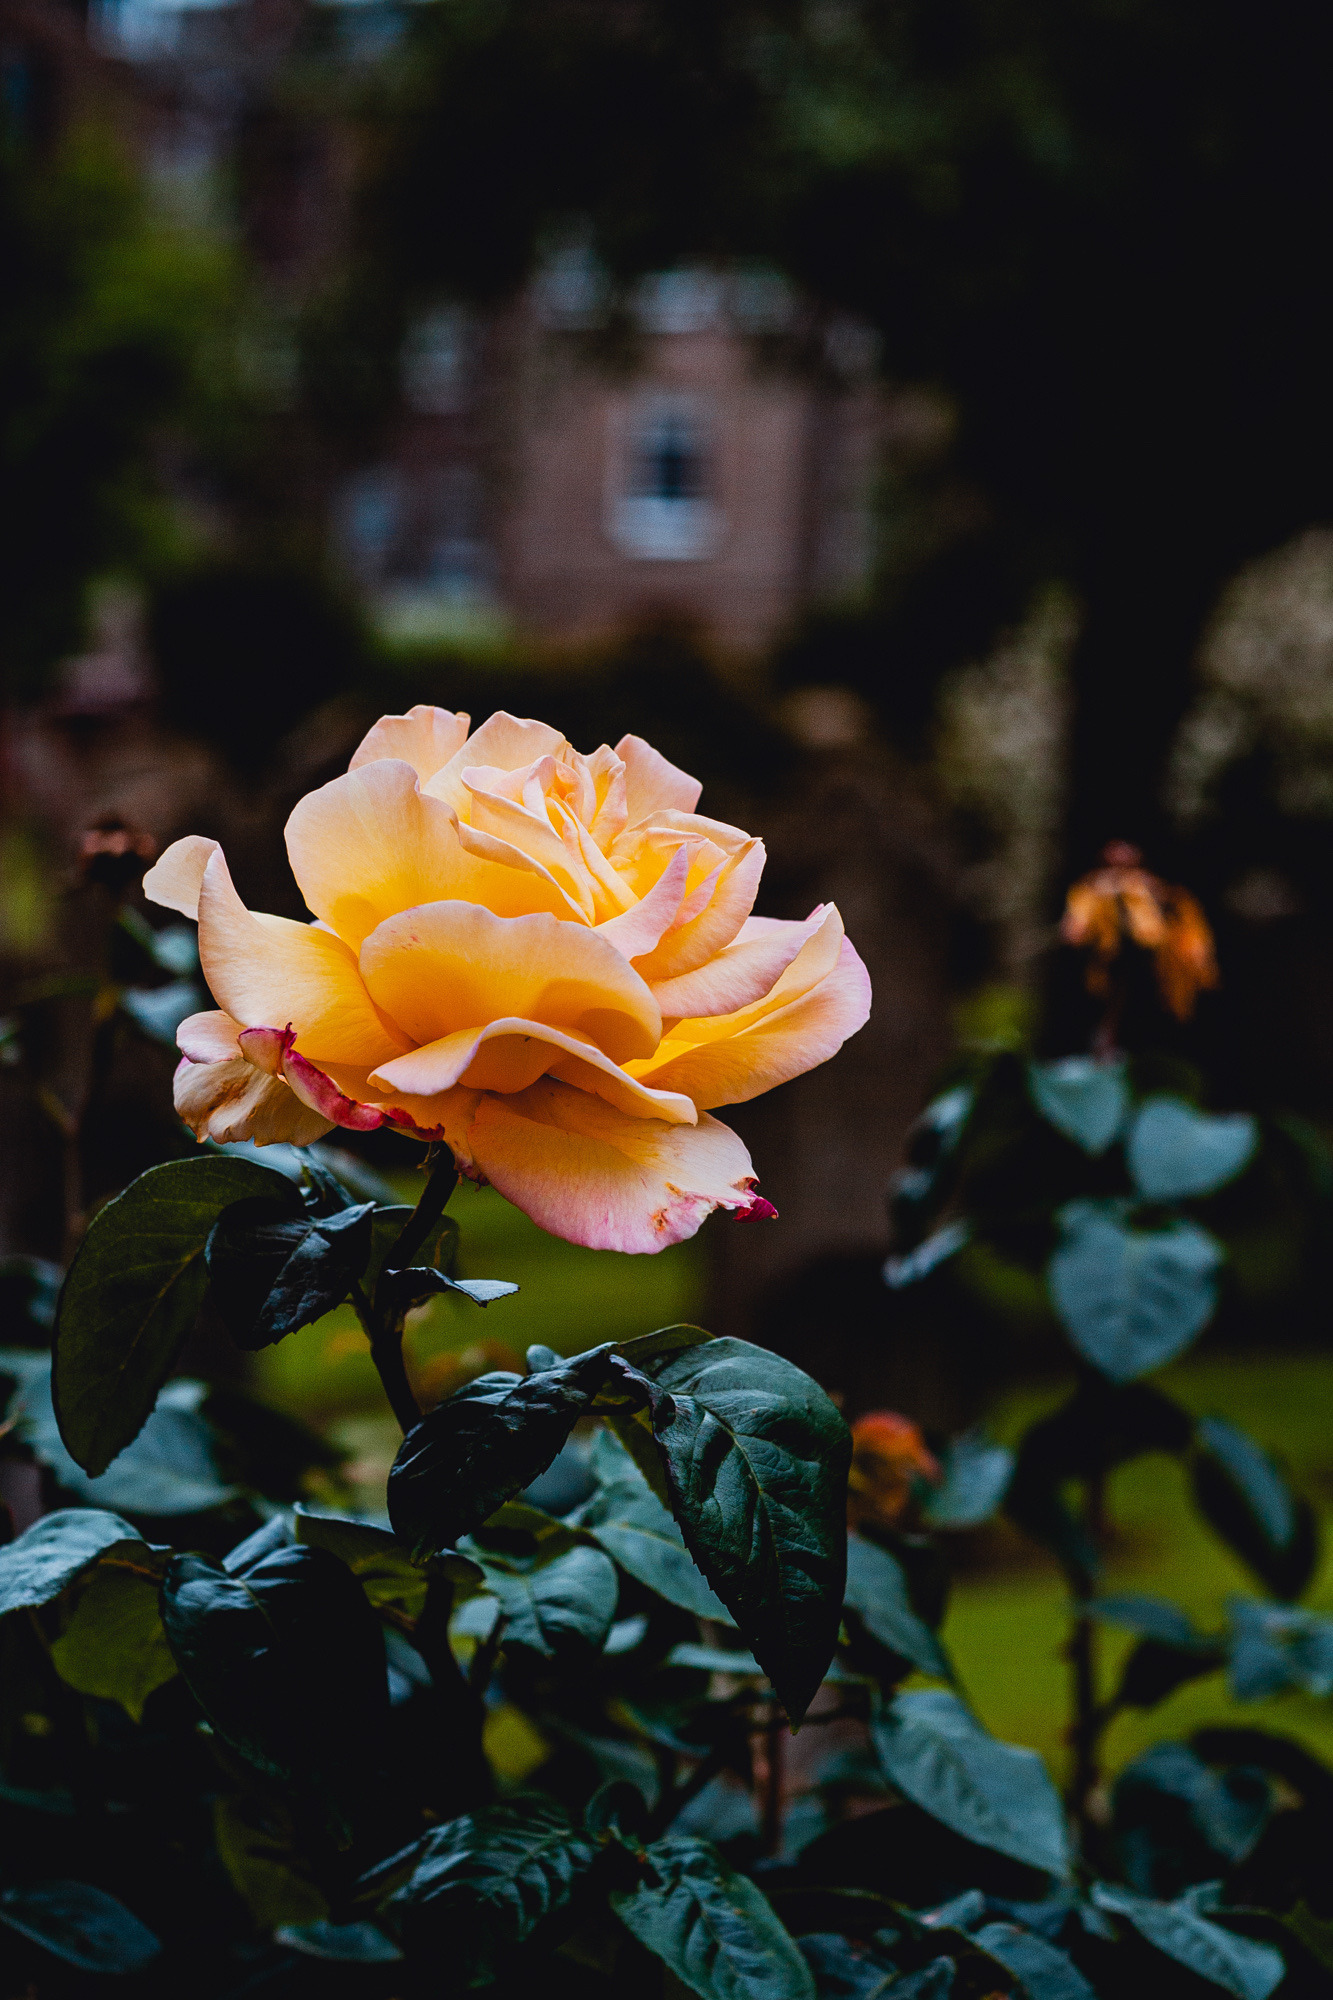 Природа Одинокая Желтая роза. Все-таки прекрасные цветы розы. Даже в одиночестве